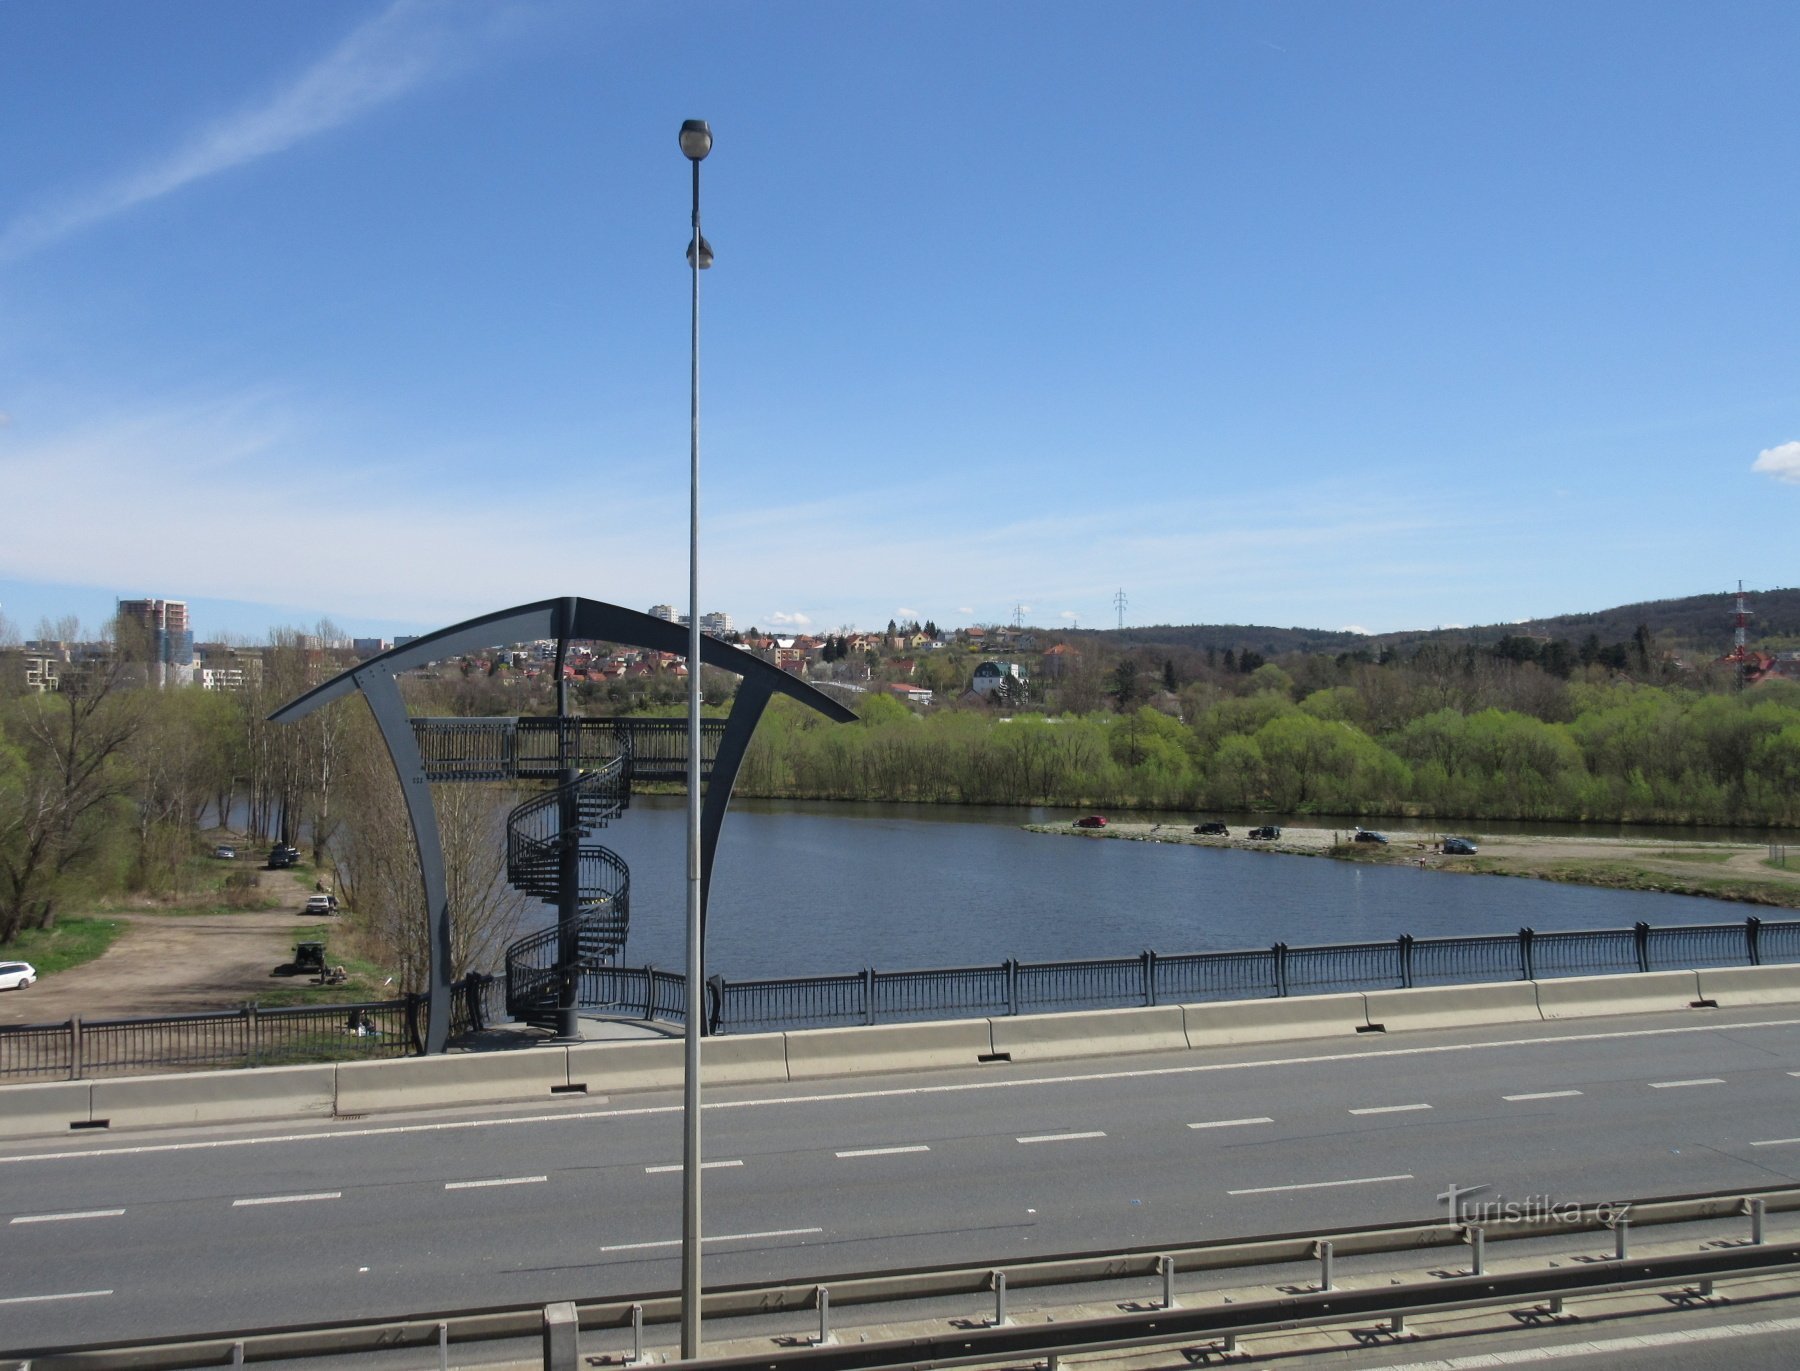 Lahovice - turnuri de observație ale podului Lahovice și confluența râurilor Berounka și Vltava